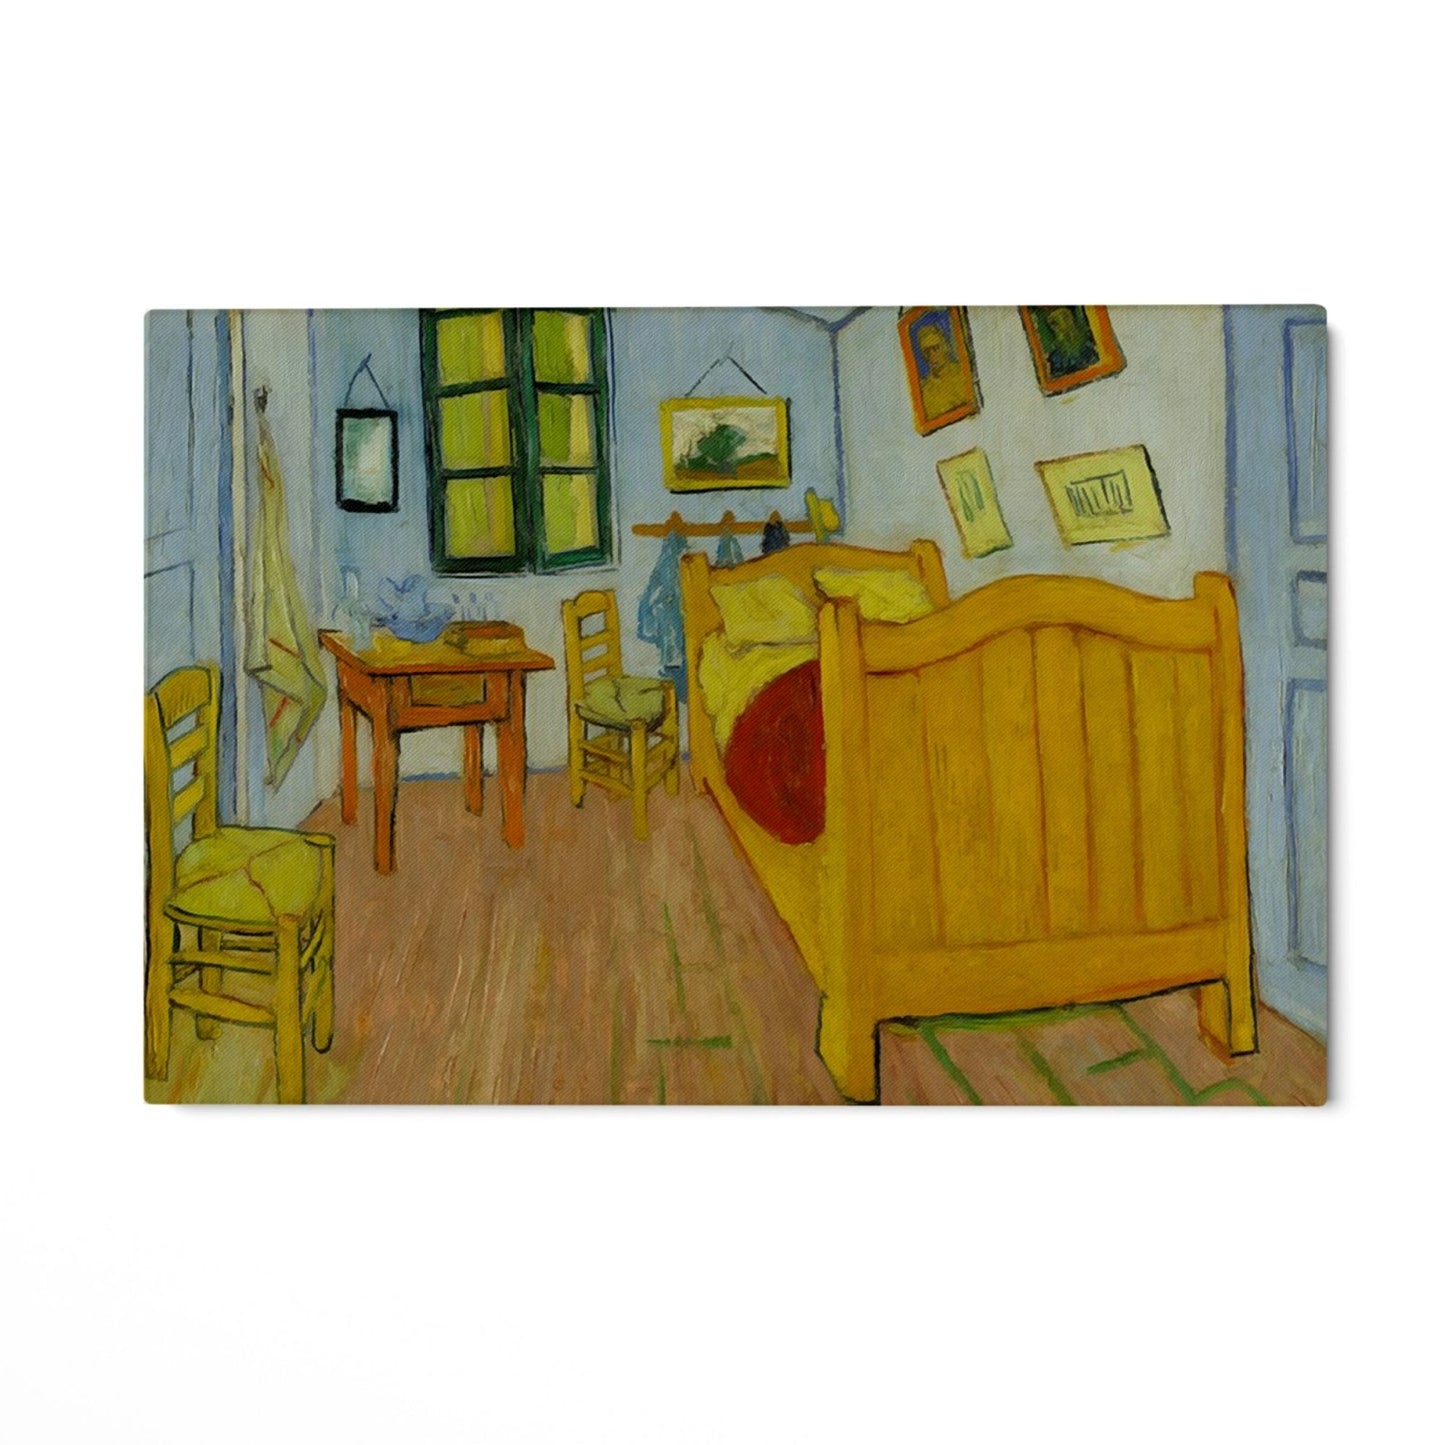 Dormitor în Arles, Vincent Van Gogh